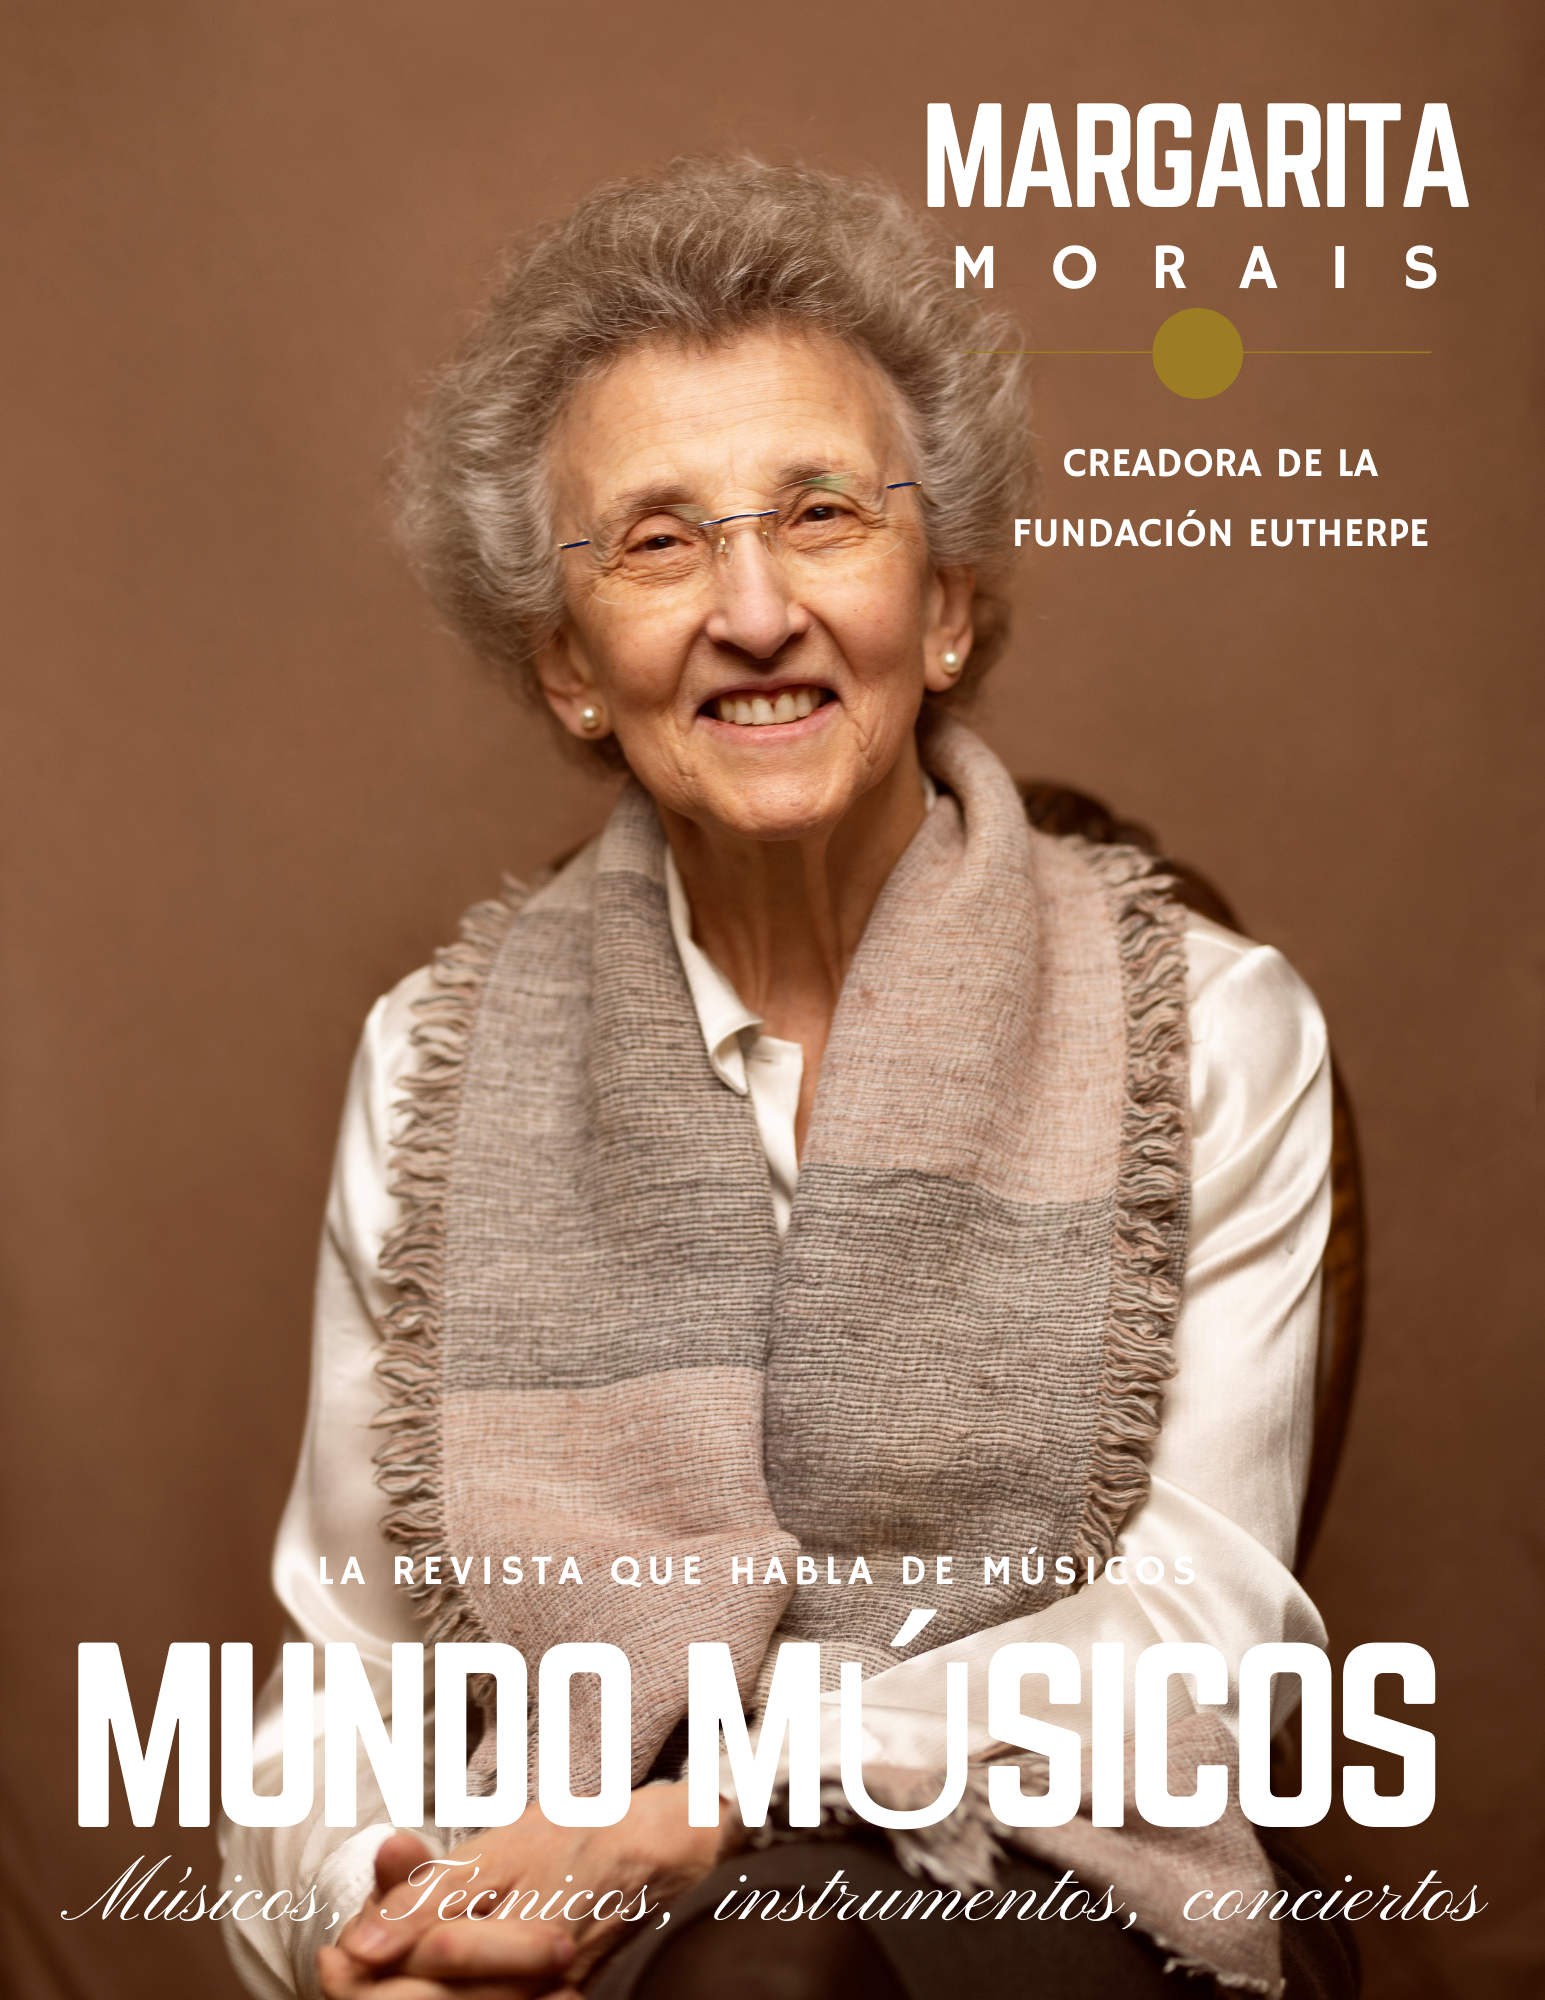 Margarita Morais entrevista